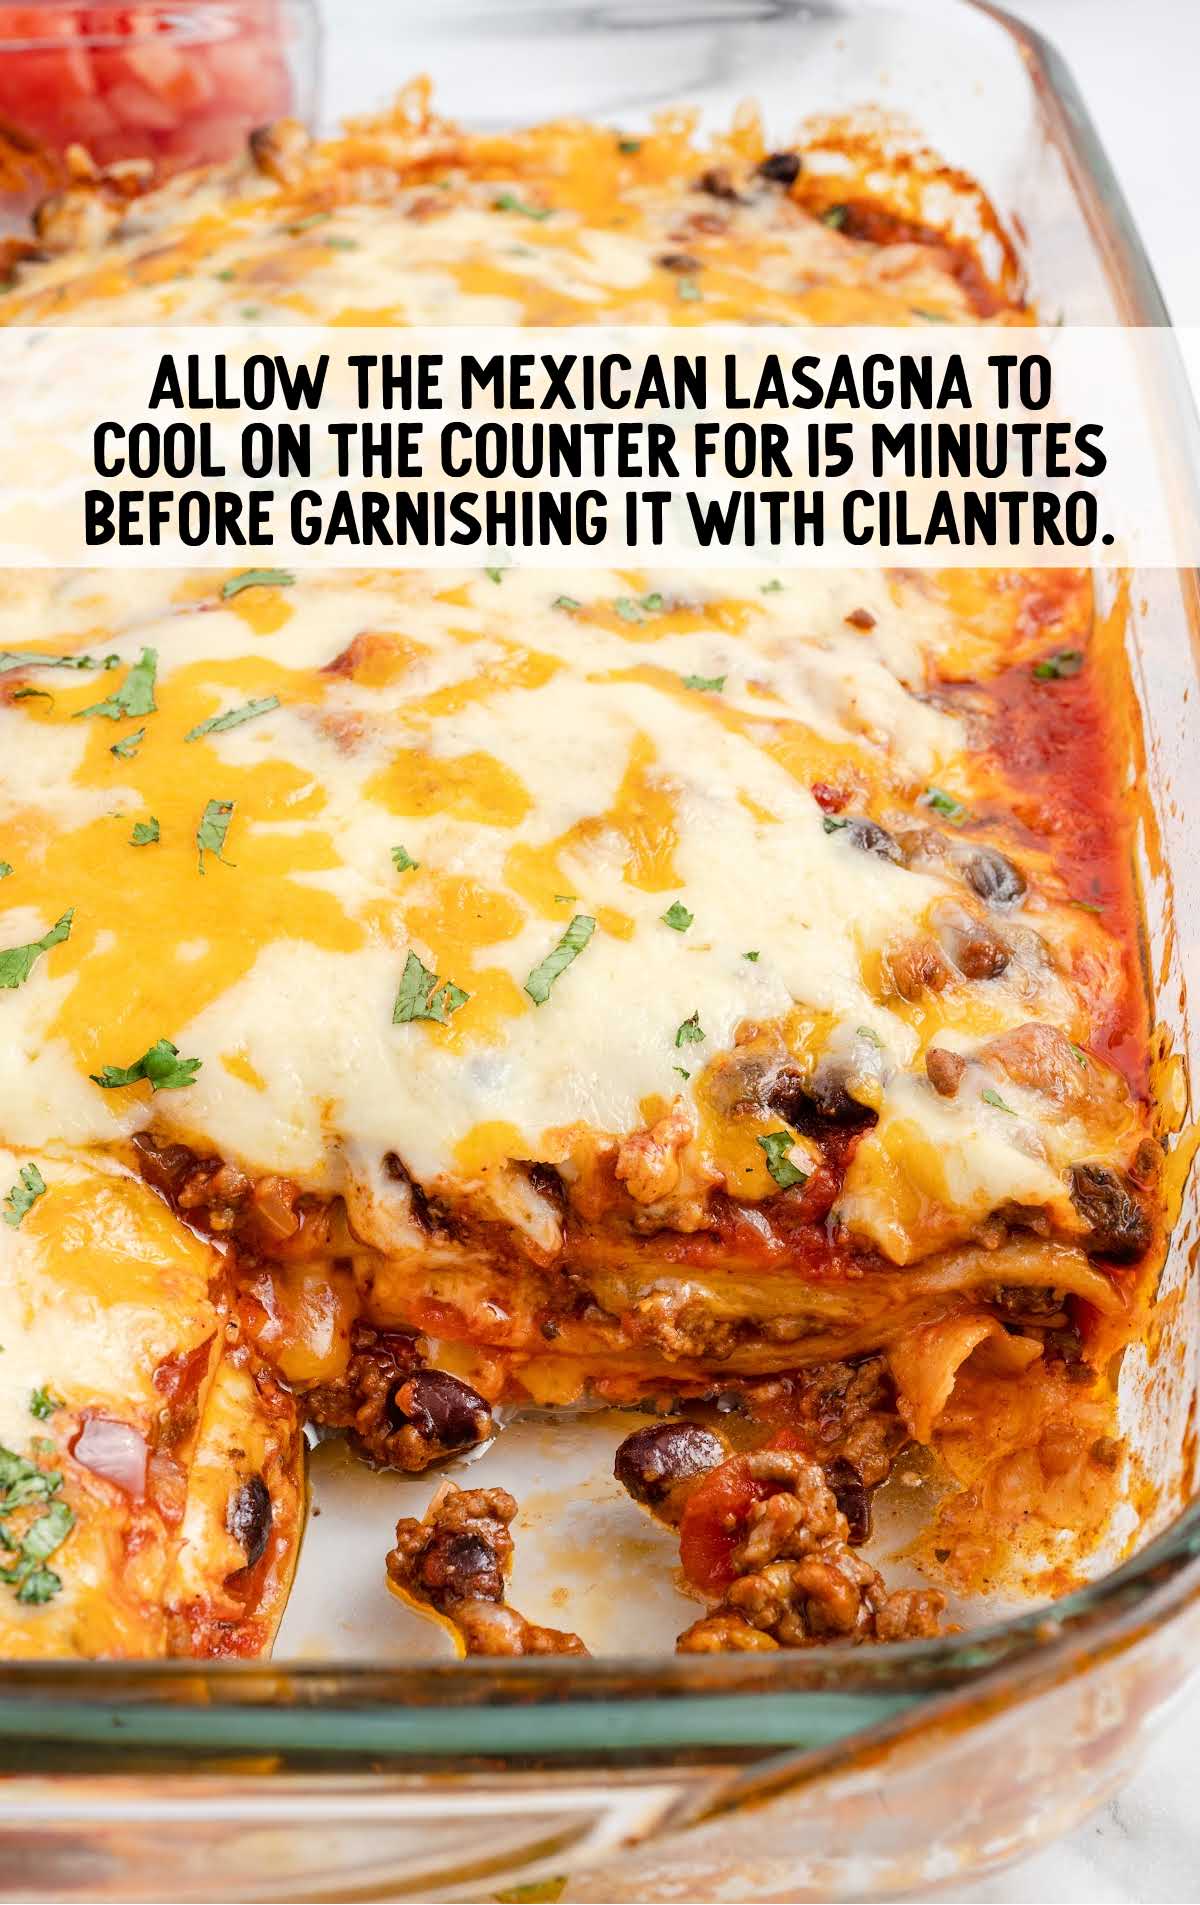 garnish lasagna with cilantro